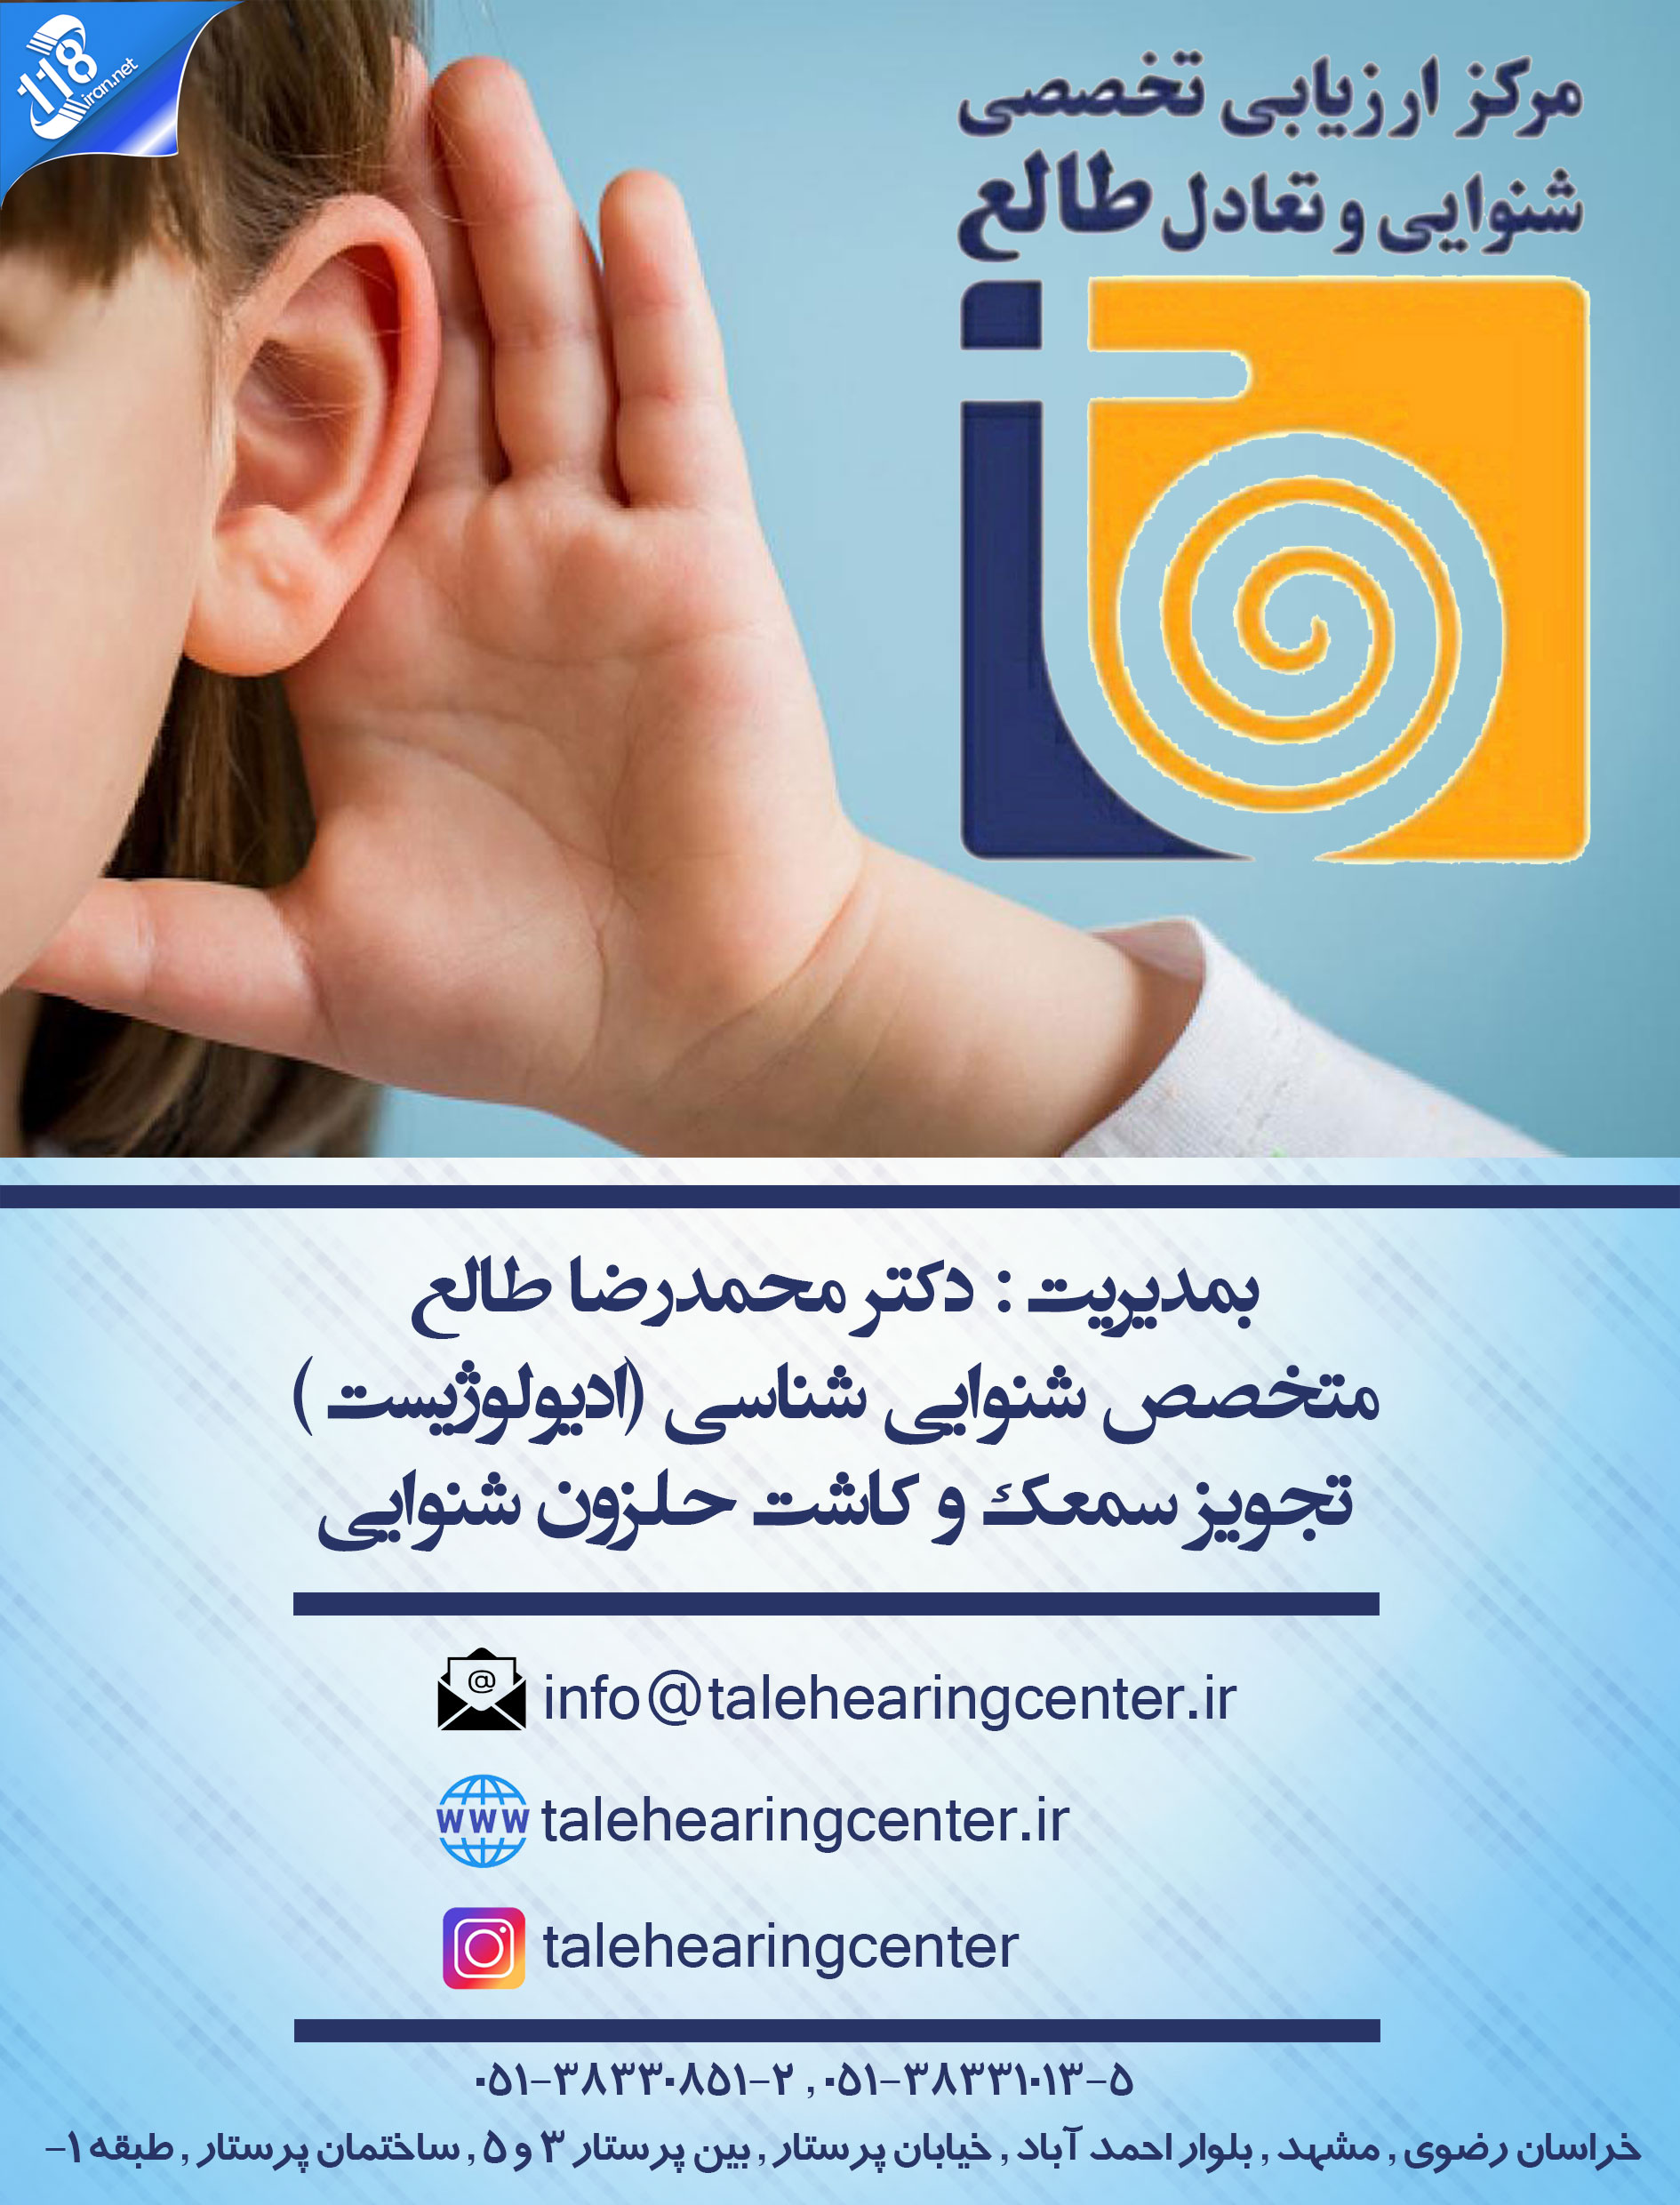  مرکز تخصصی ارزیابی شنوایی و تعادل طالع در مشهد 